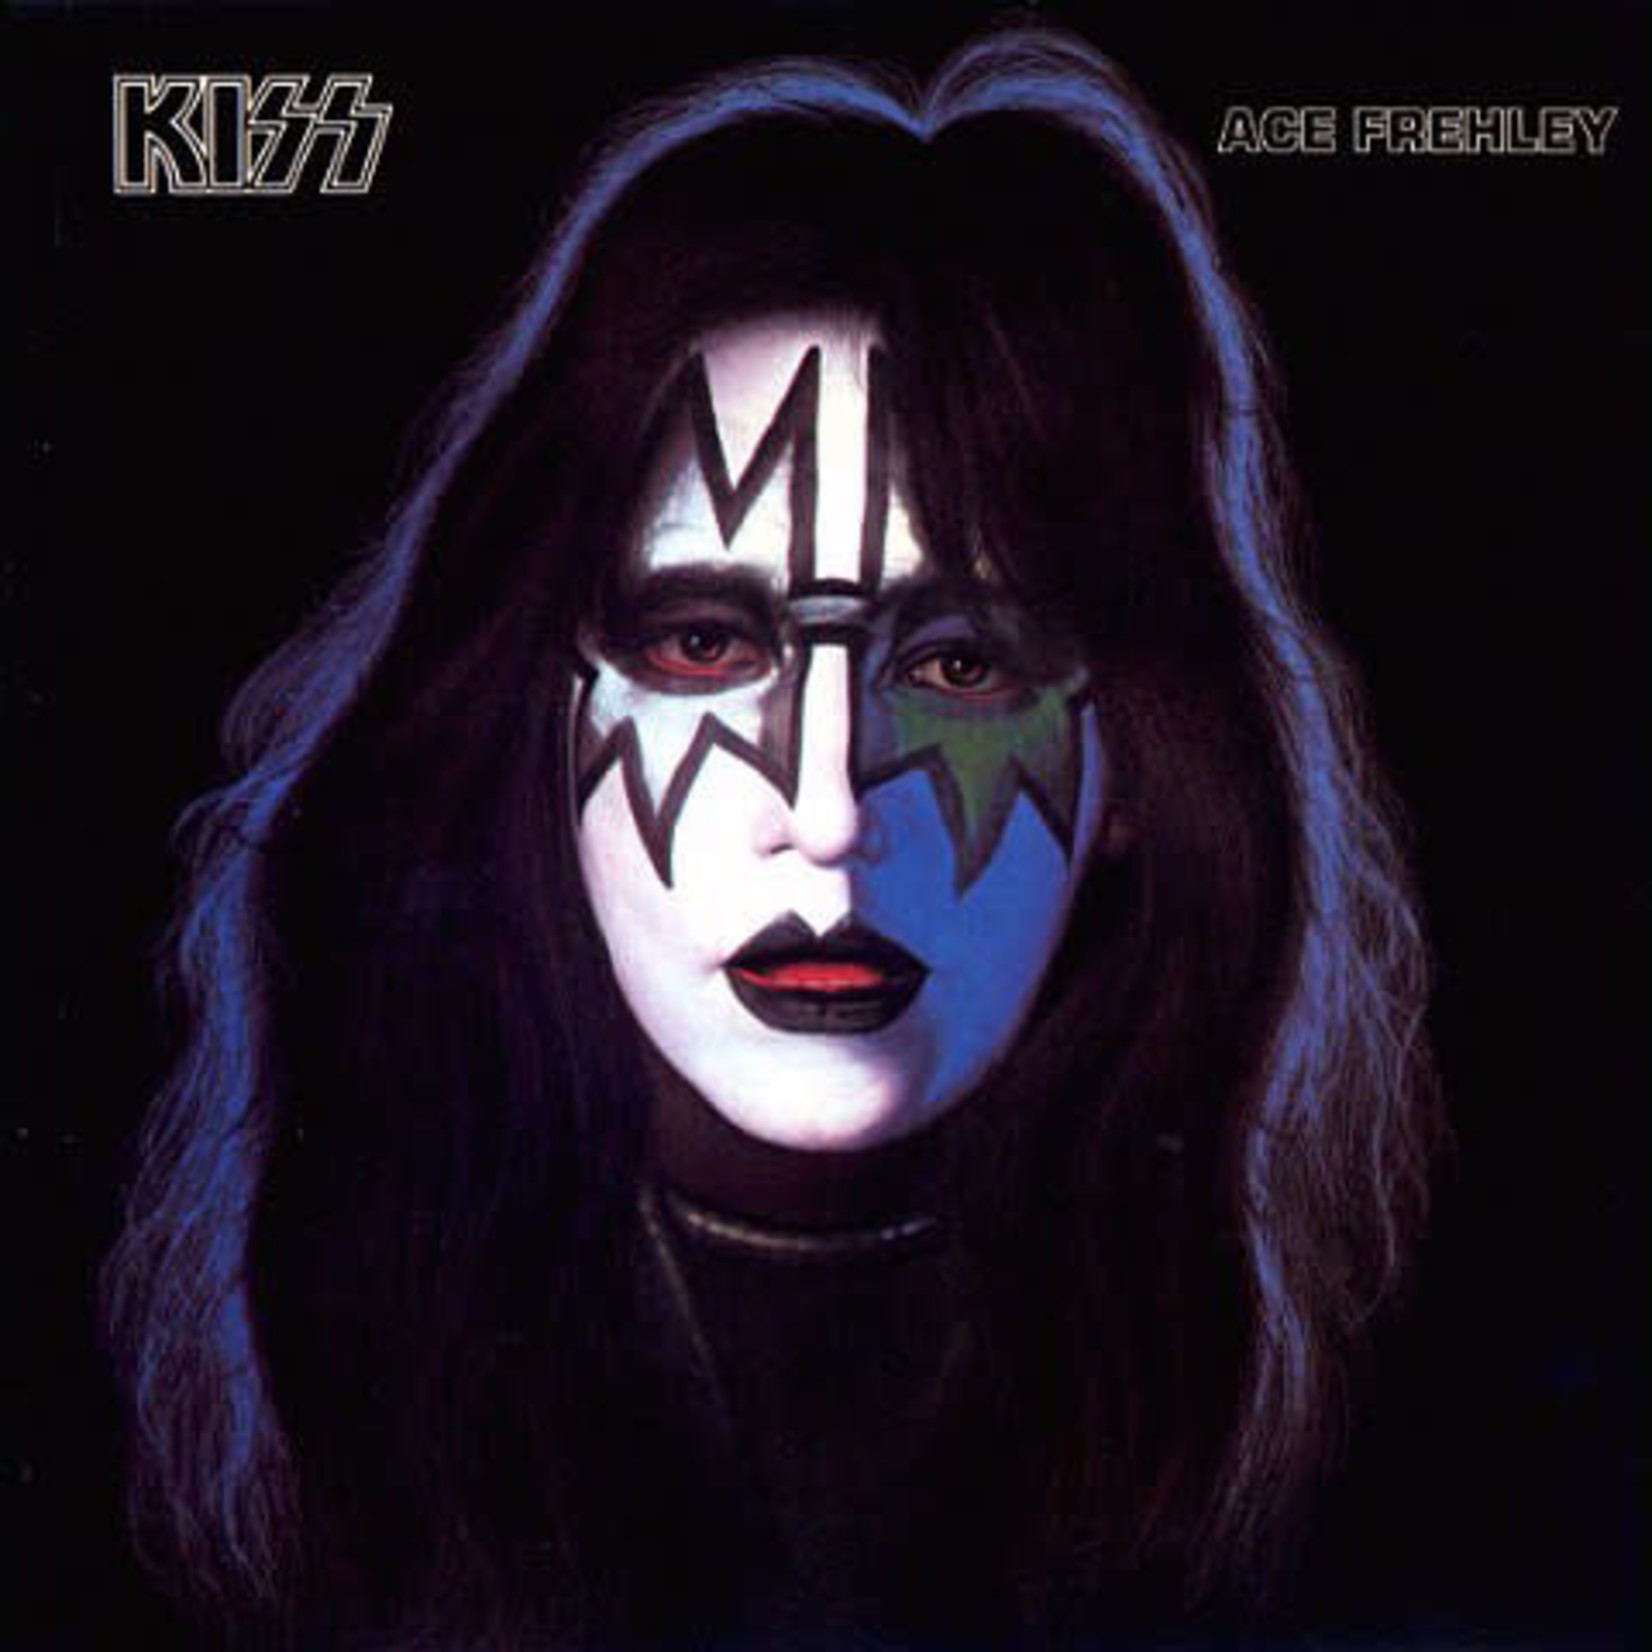 Kiss Kiss, Ace Frehley – Ace Frehley (VG, 1979, LP, Casablanca – NBLP 7121, Canada)